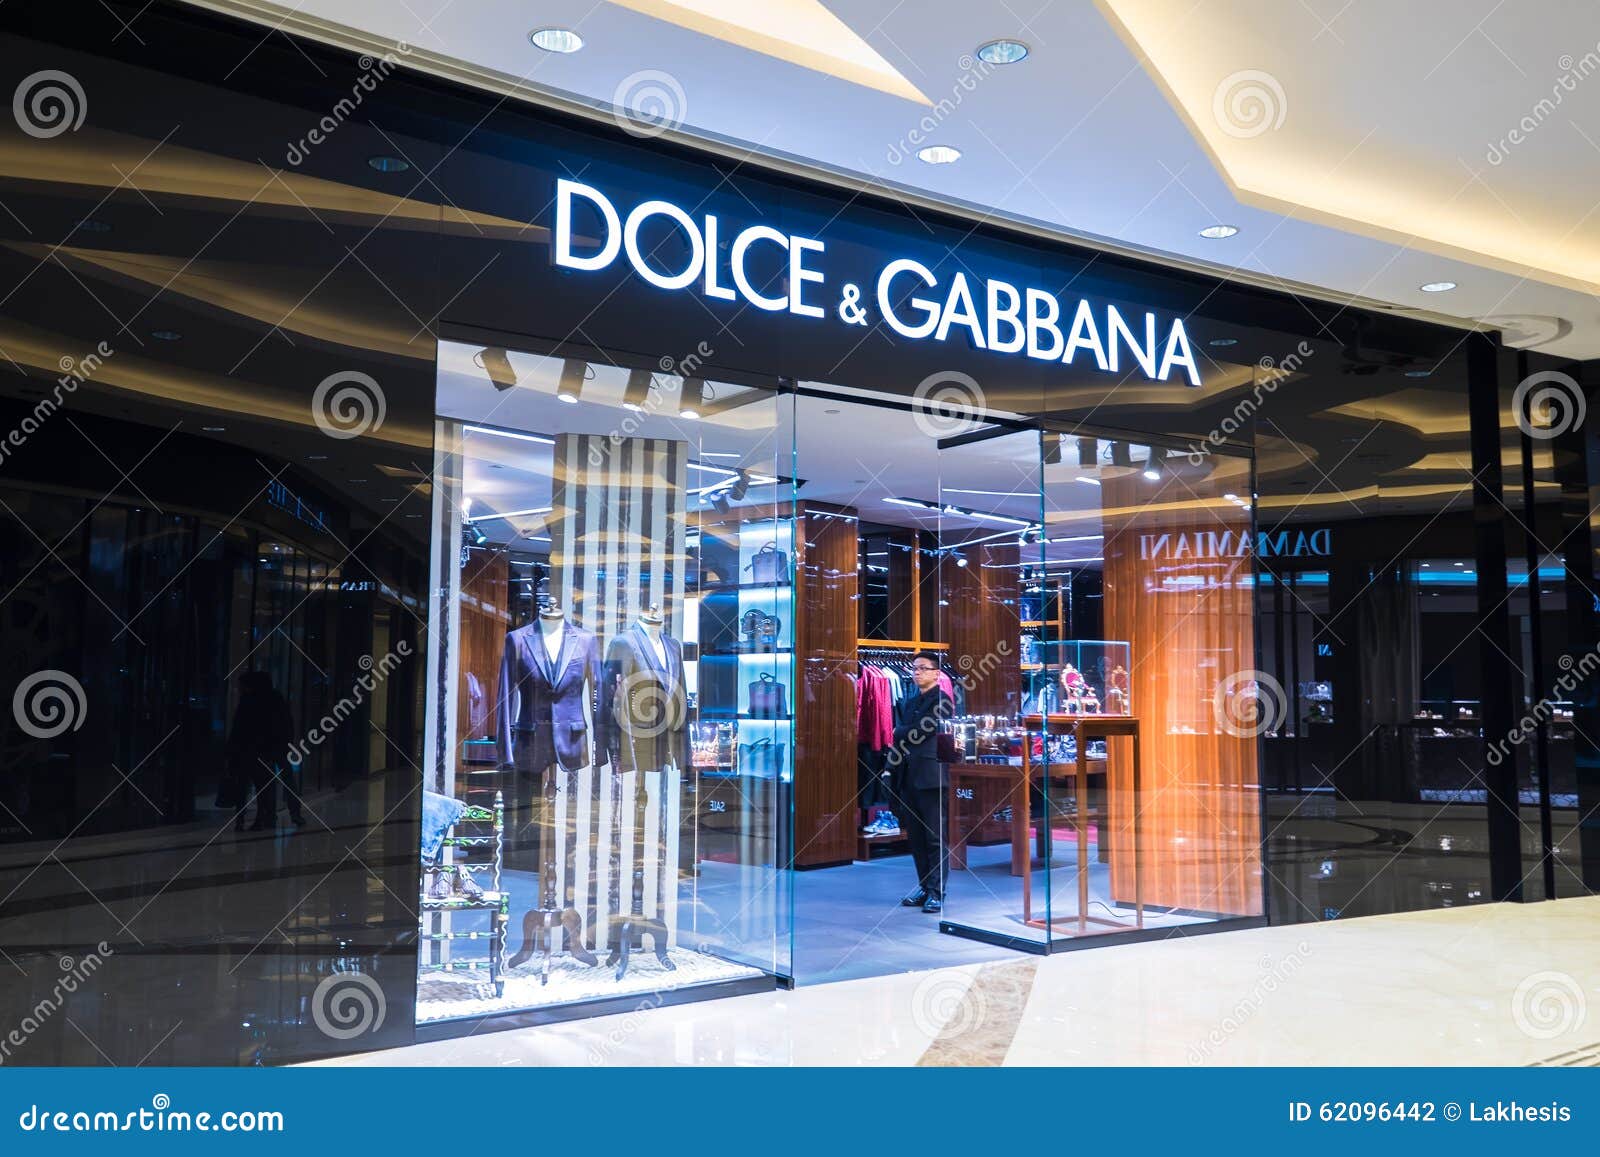 dolce & gabbana luxury clothing